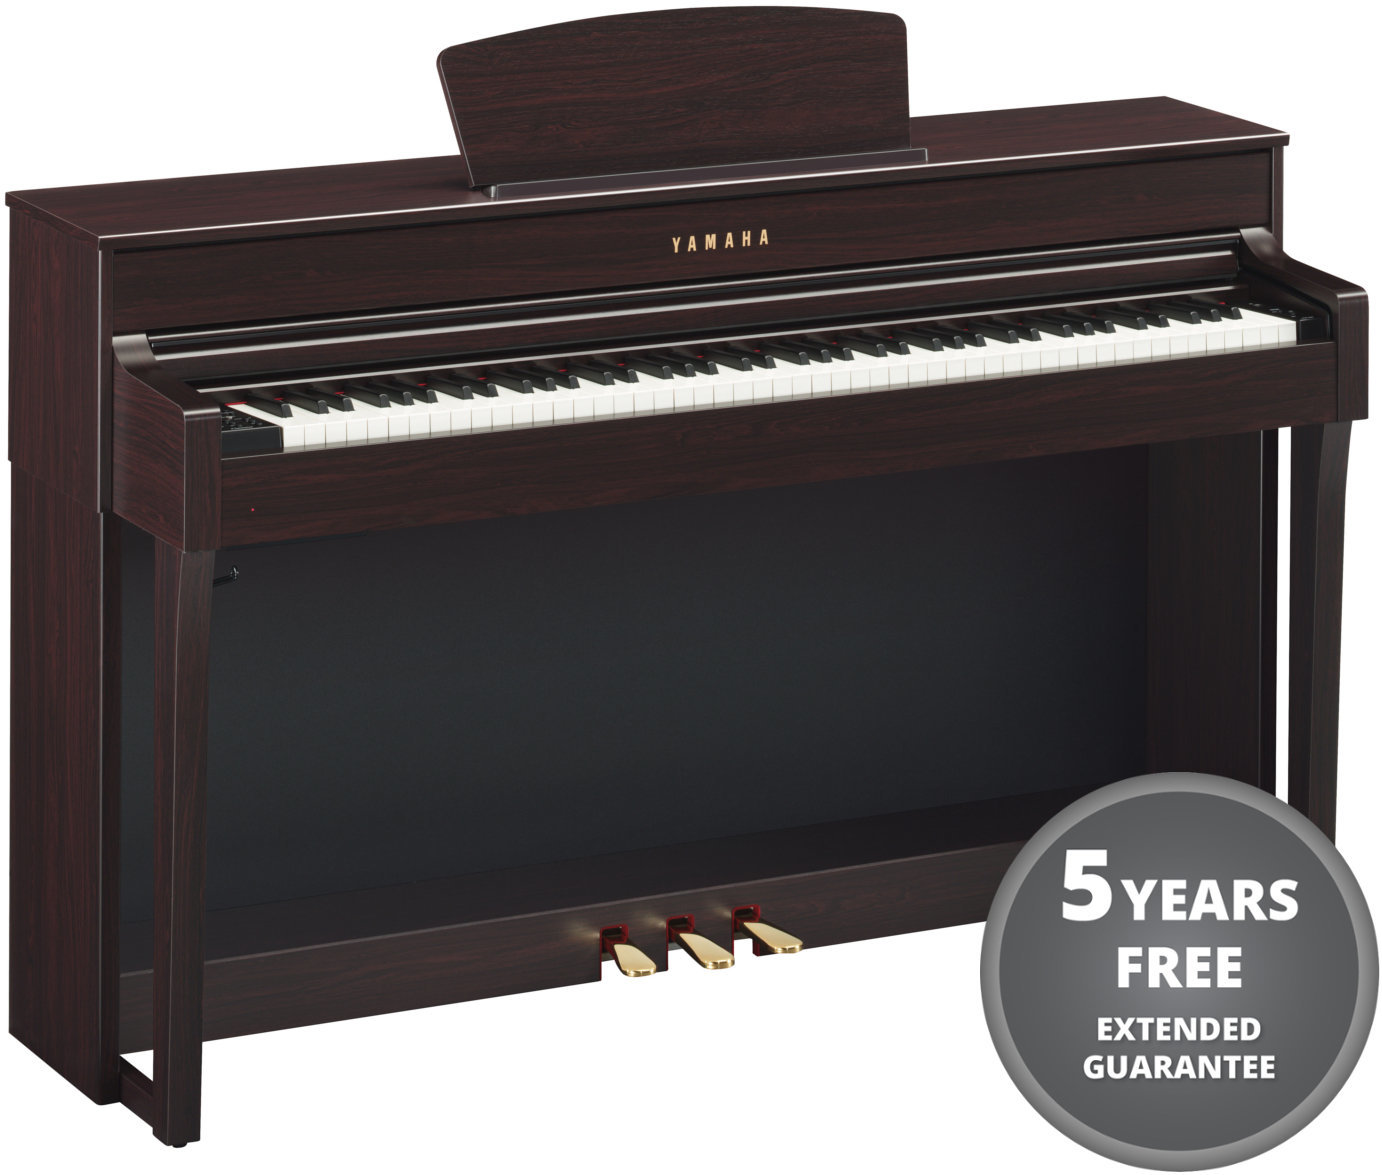 Ψηφιακό Πιάνο Yamaha CLP-635 R